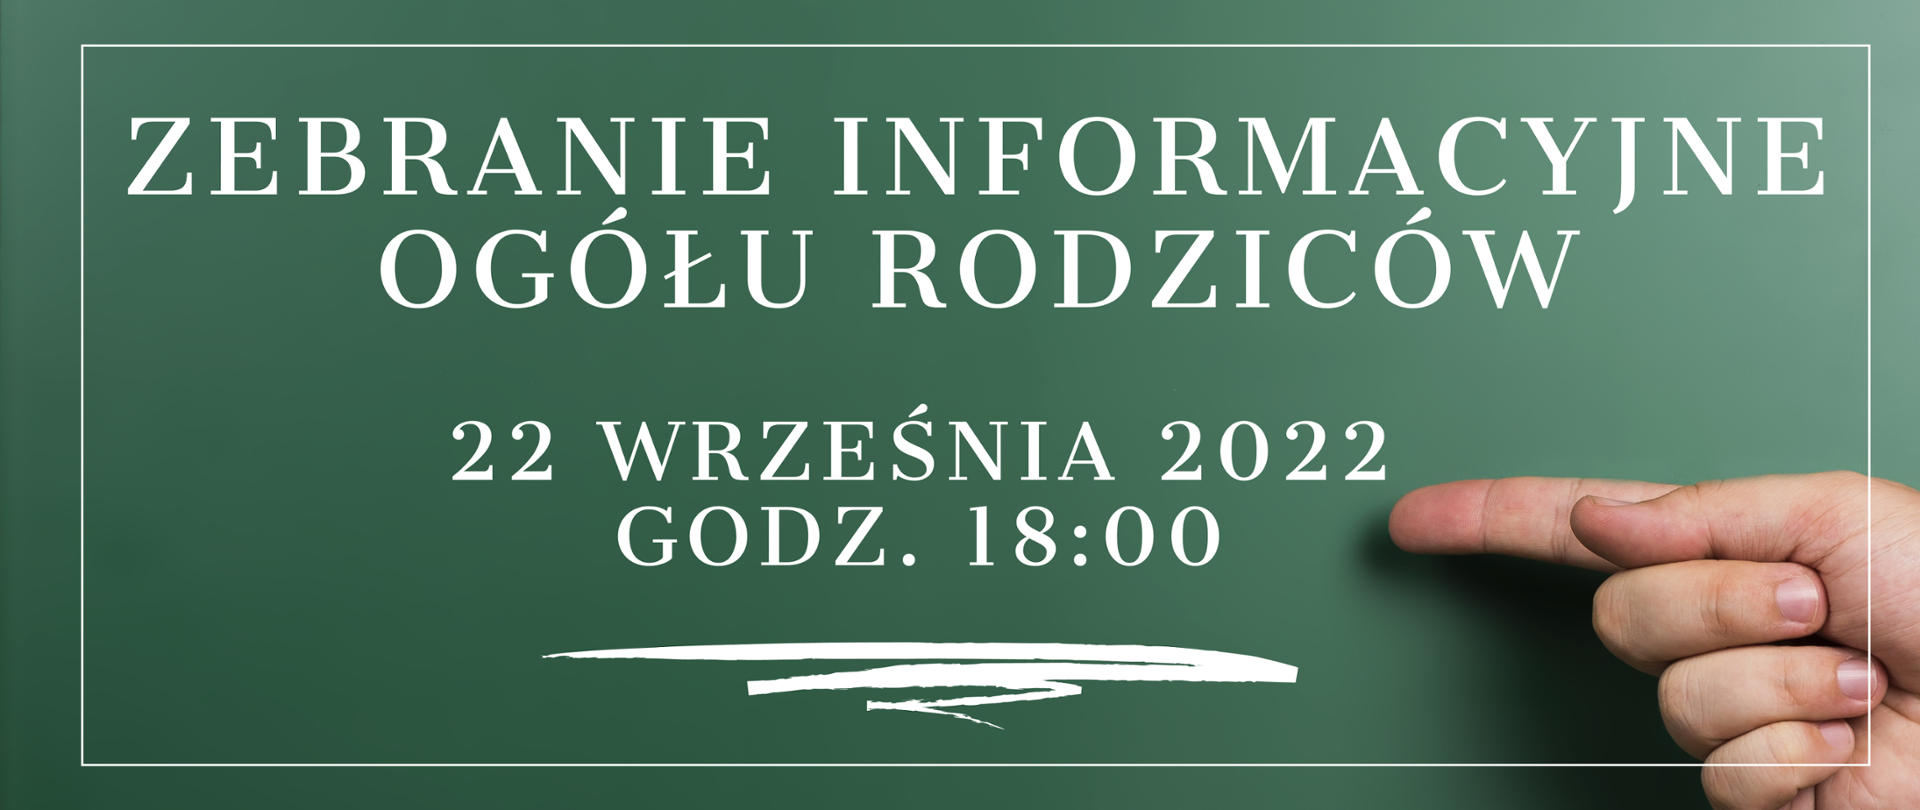 Grafika z zielonym tłem i dłonią która wskazuje na tekst: Zebranie ogółu rodziców. 22 września 2022 godz. 18:00